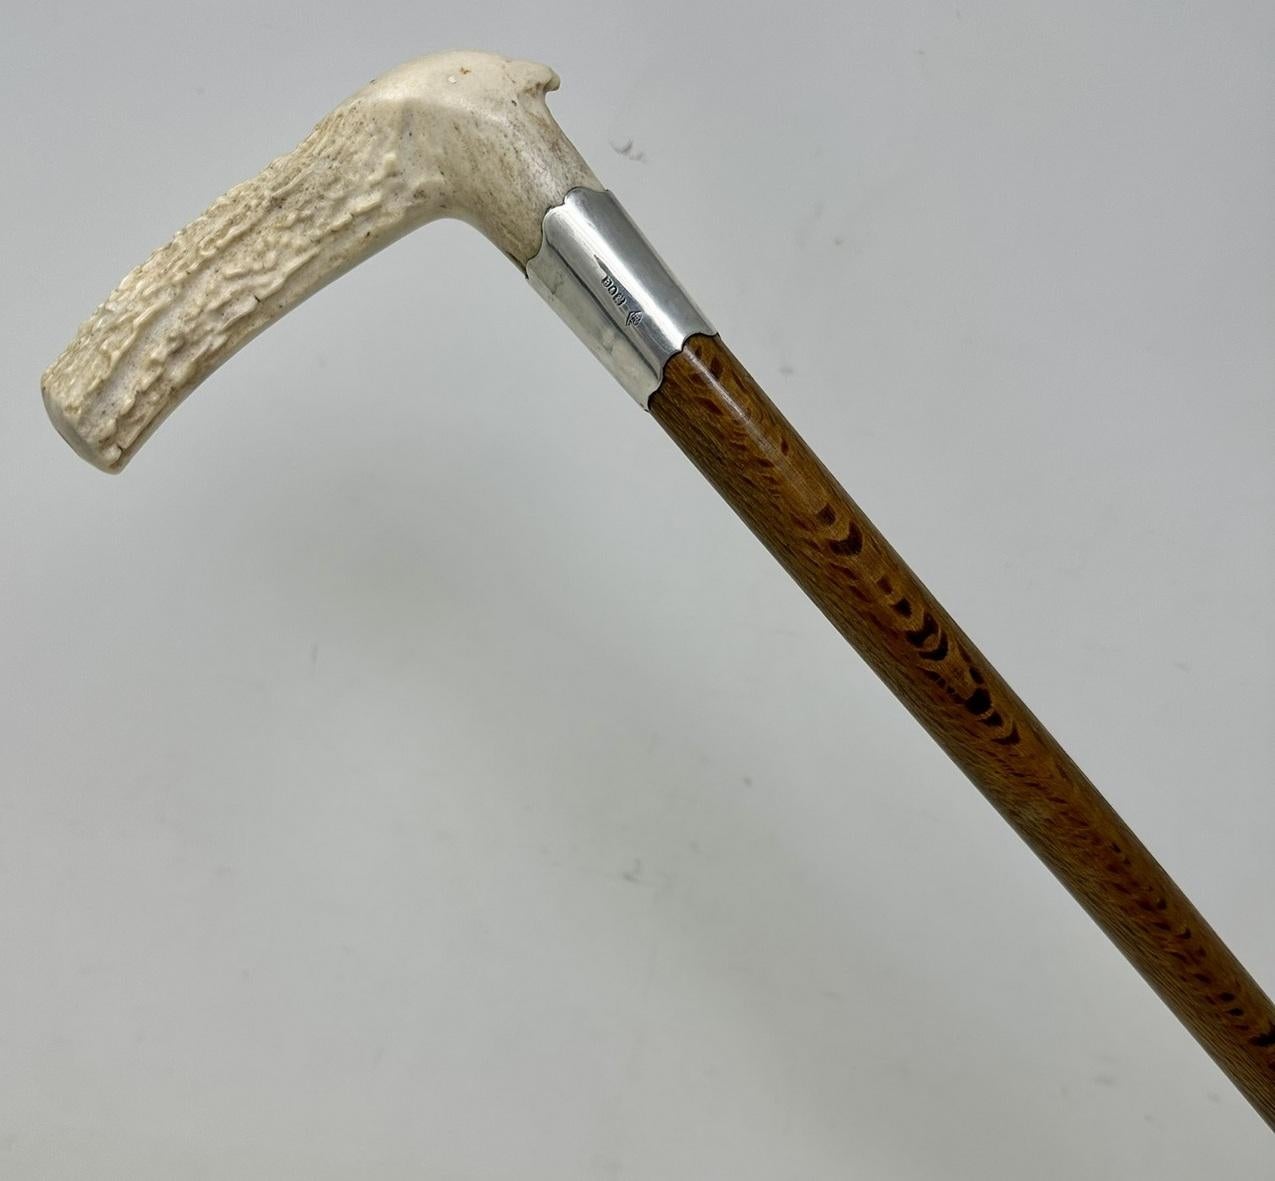 British Antique Vintage Wooden Stag Antler Horn Walking Stick Cane Sterling Silver 1899 